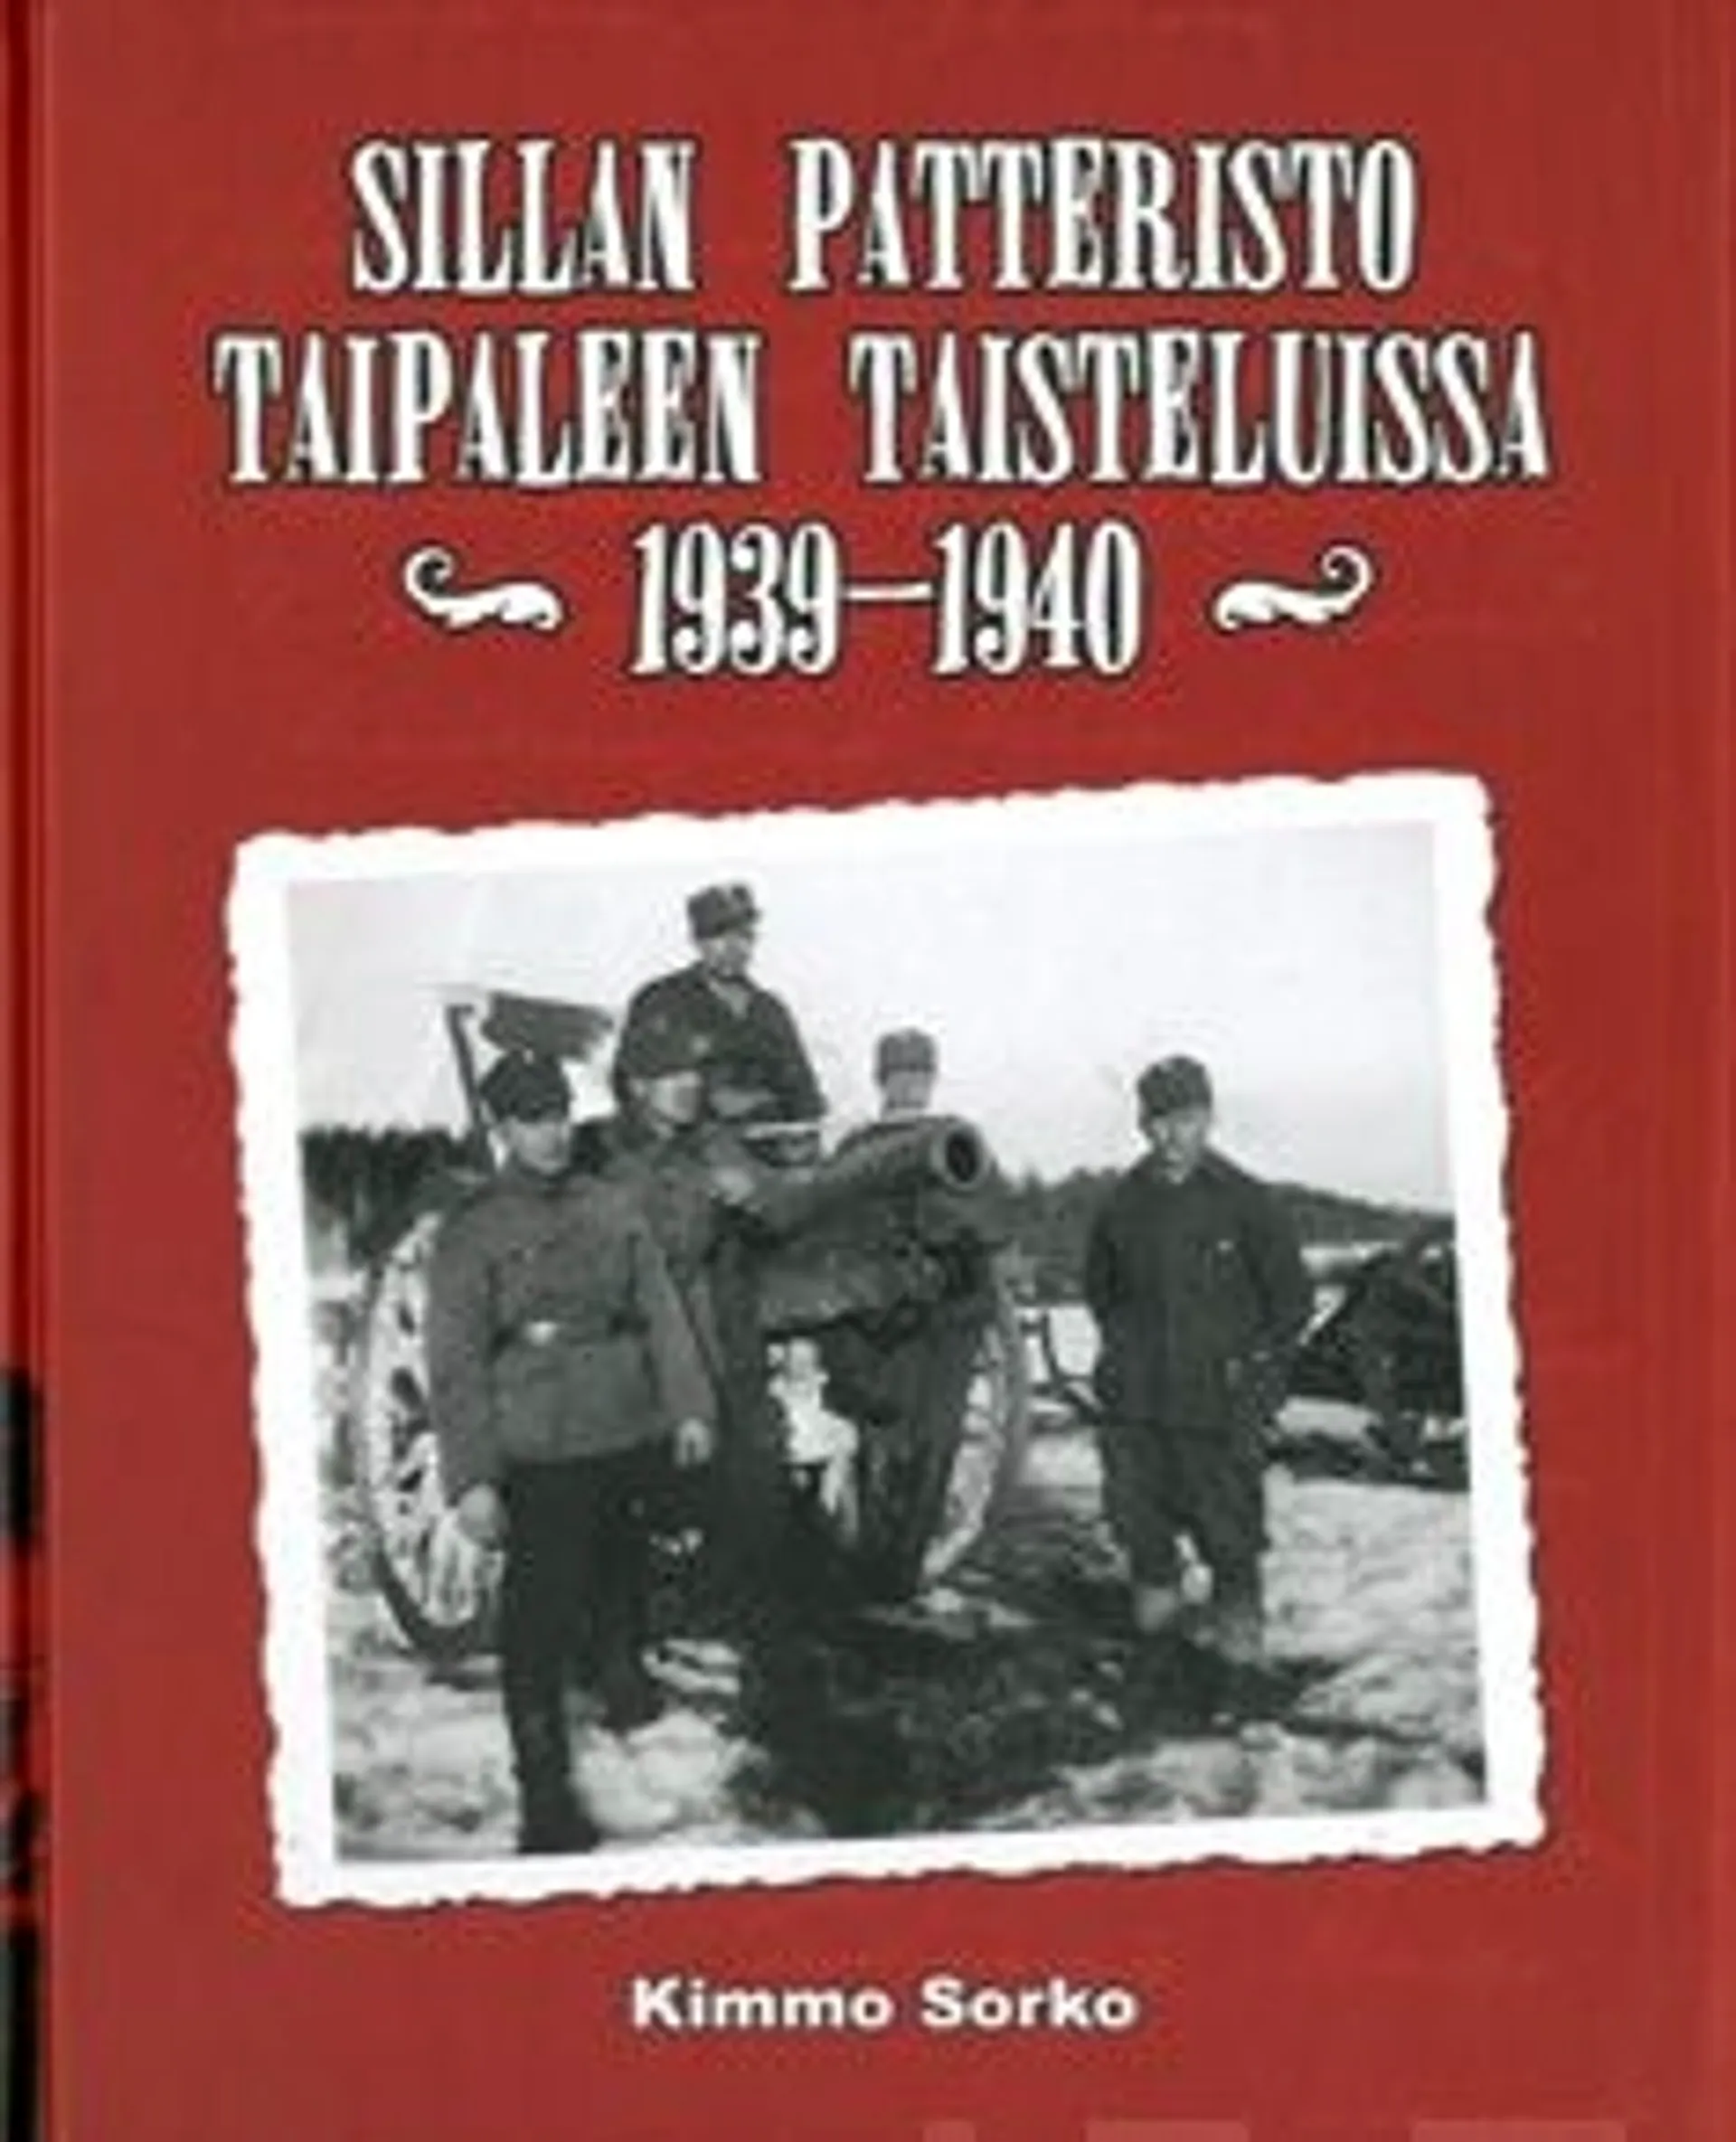 Sorko, Sillan patteristo Taipaleen taisteluissa 1939-1940